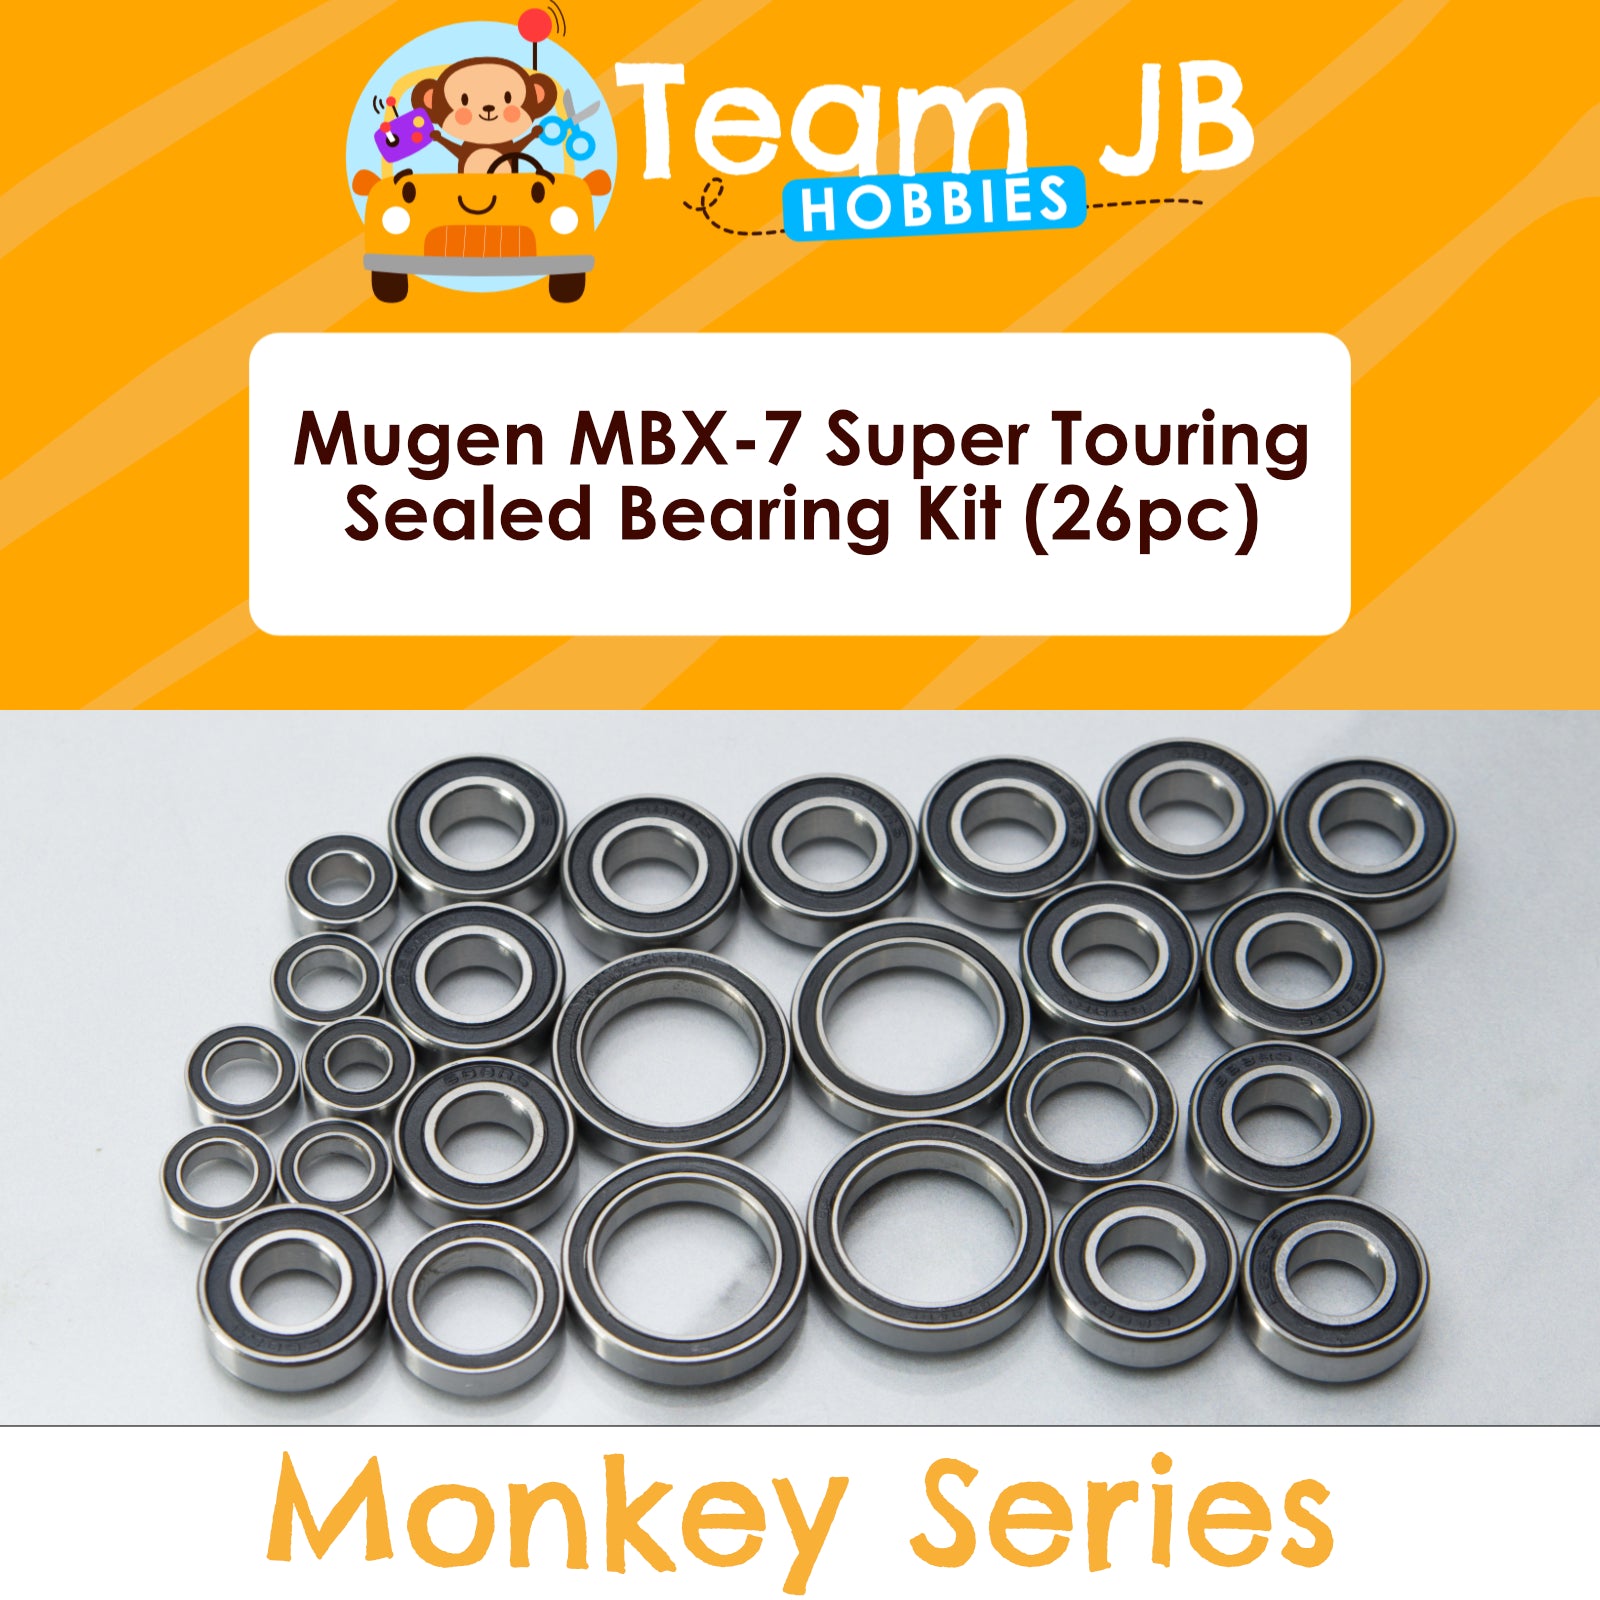 Mugen MBX-7 Super Touring - Sealed Bearing Kit